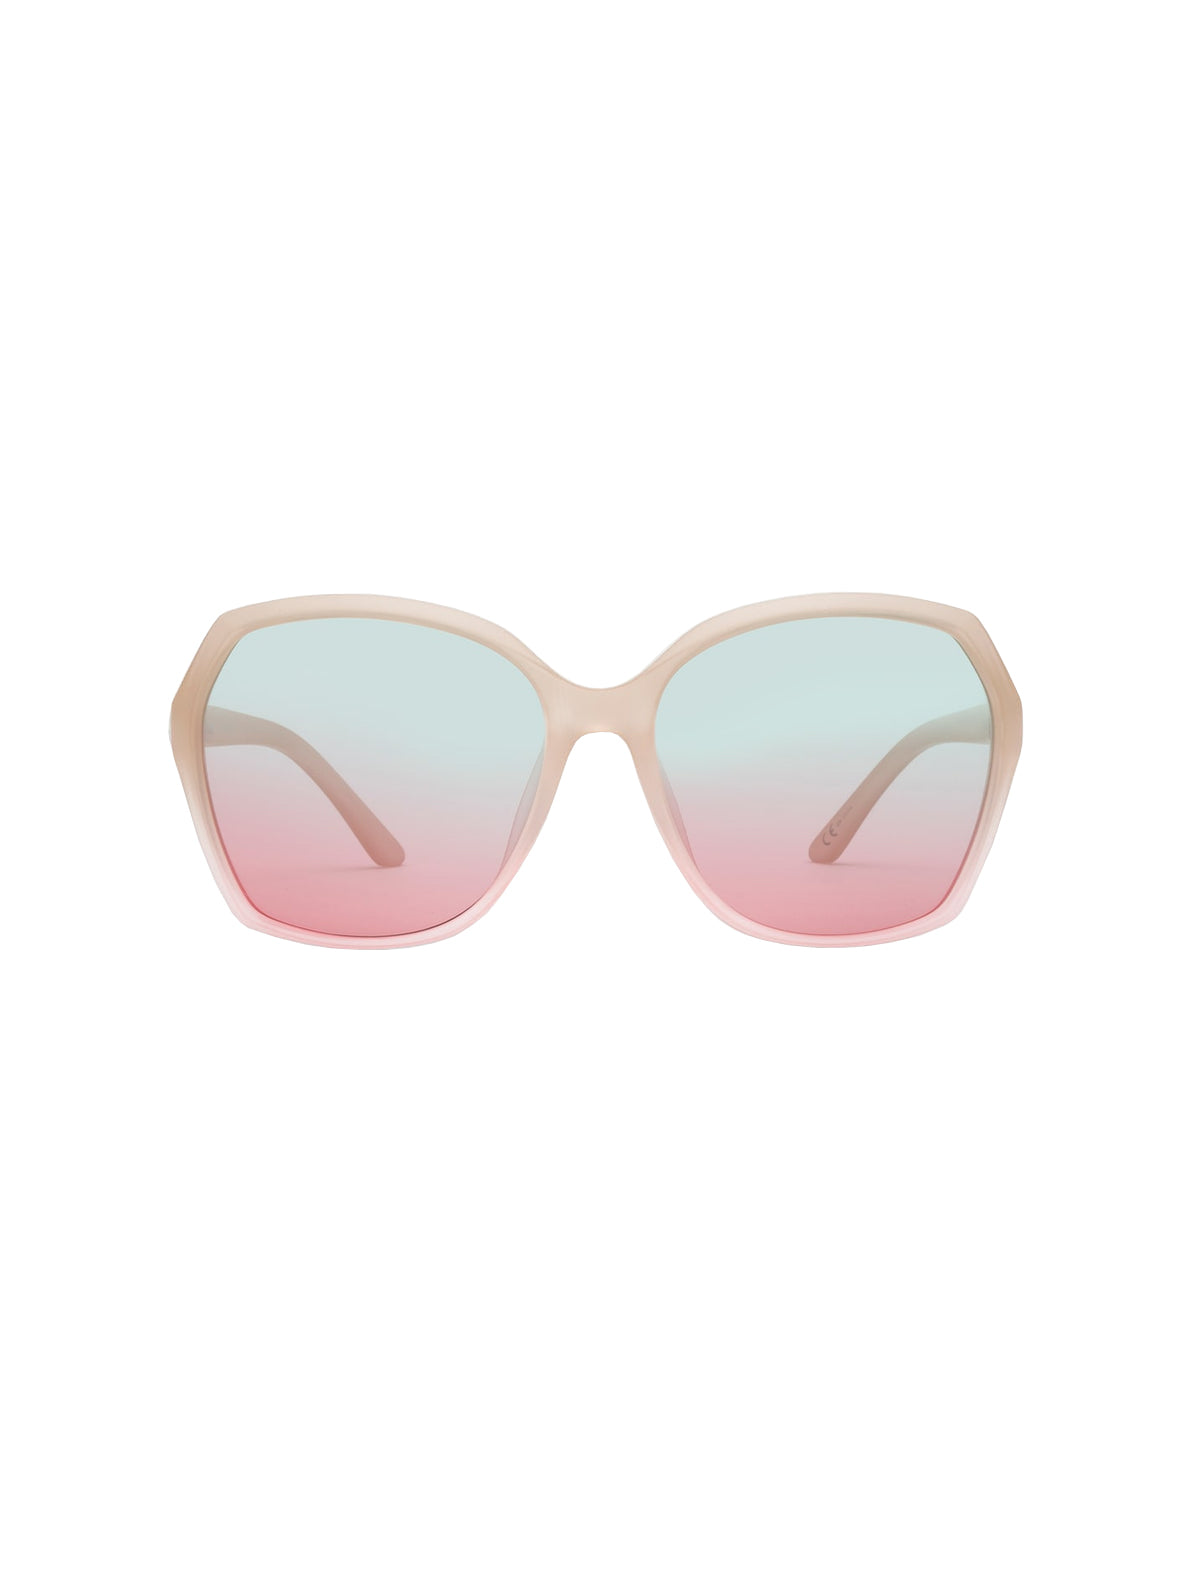 Volcom Psychic Sunglasses SoFaded AquaGradient